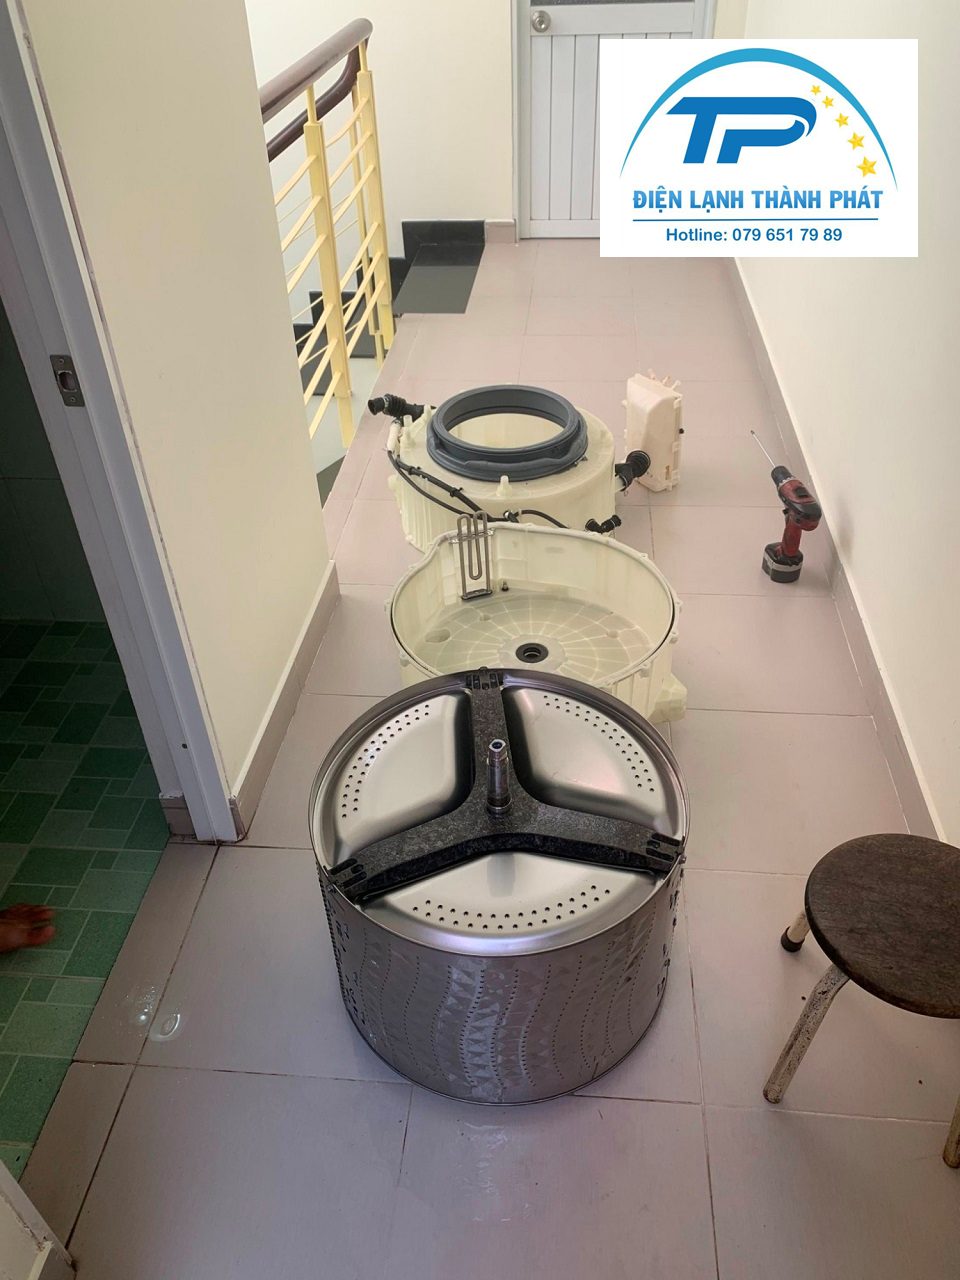 Dịch vụ vệ sinh máy giặt chuyên nghiệp sẽ giúp bạn khắc phục mọi vấn đề của thiết bị.